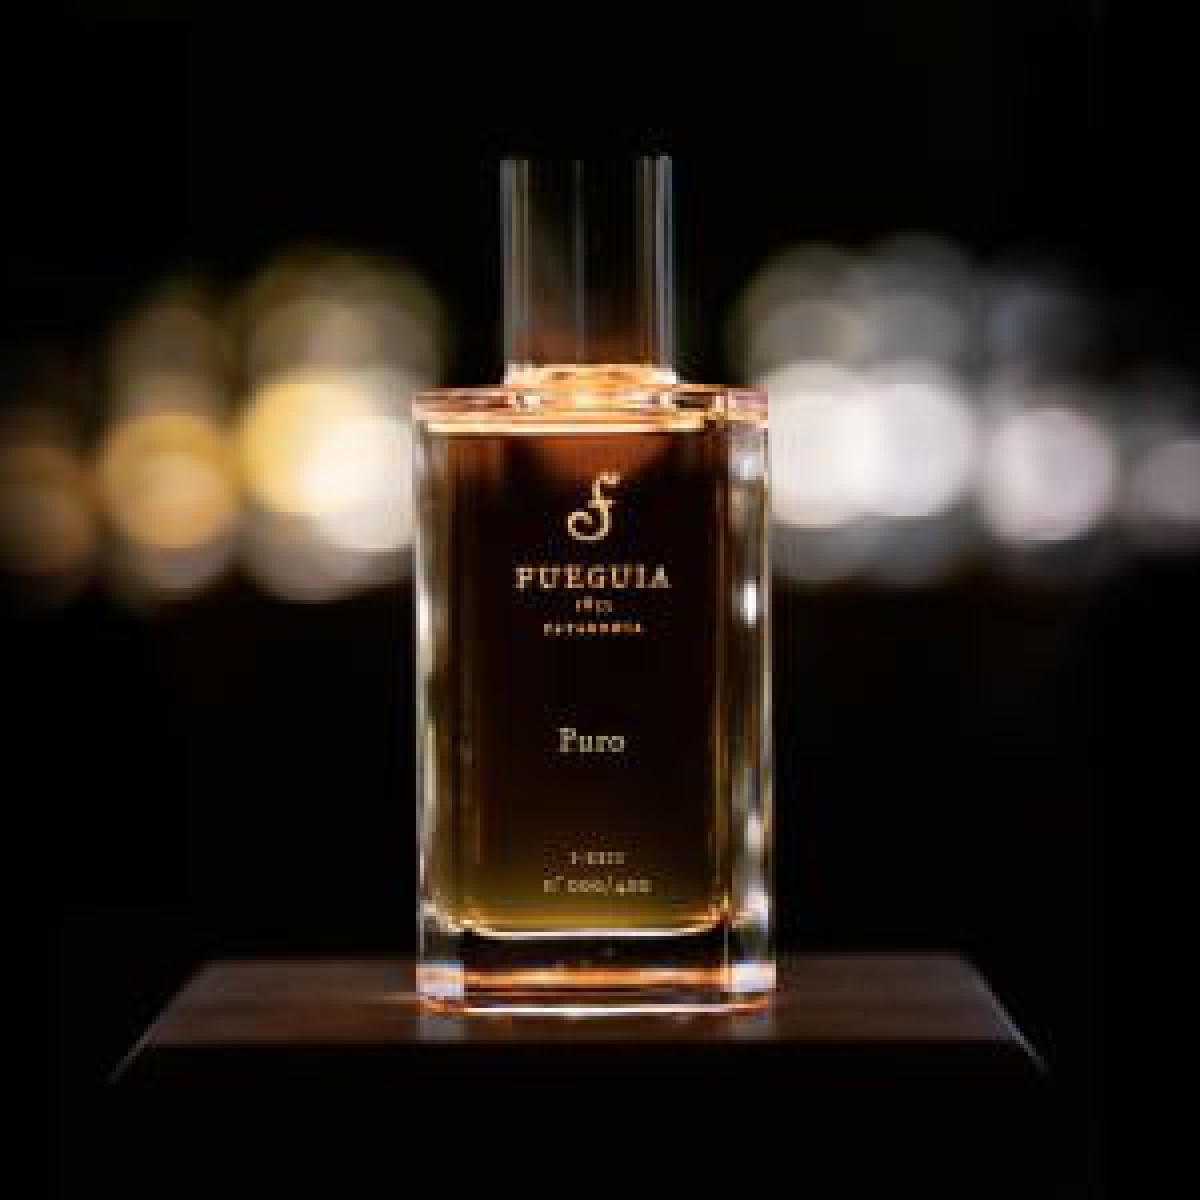 「フエギア 1833」が“シガーに火をつける前のひと時”を表現した新作香水「プーロ」を発売 | コスメニュース『びぃらぼ』